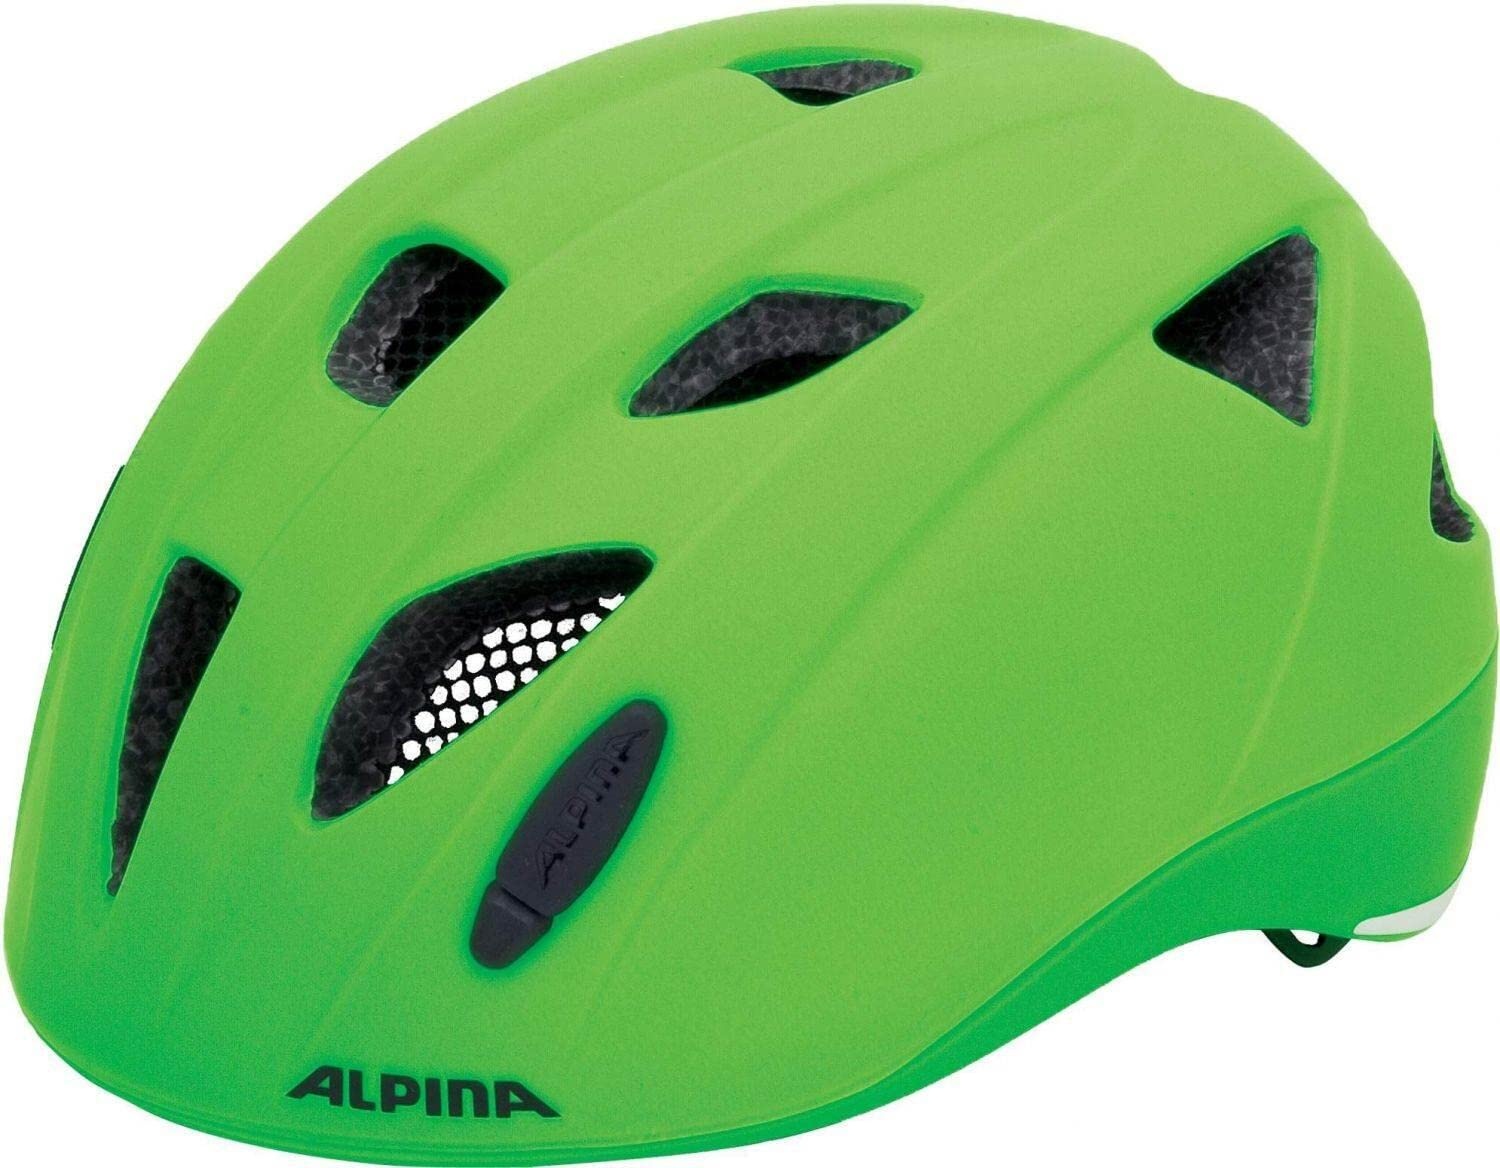 ALPINA XIMO L.E. - Leichter, Sicherer & Bruchfester Fahrradhelm Mit Optionalen LED-Licht Für Kinder, green matt, 47-51 cm